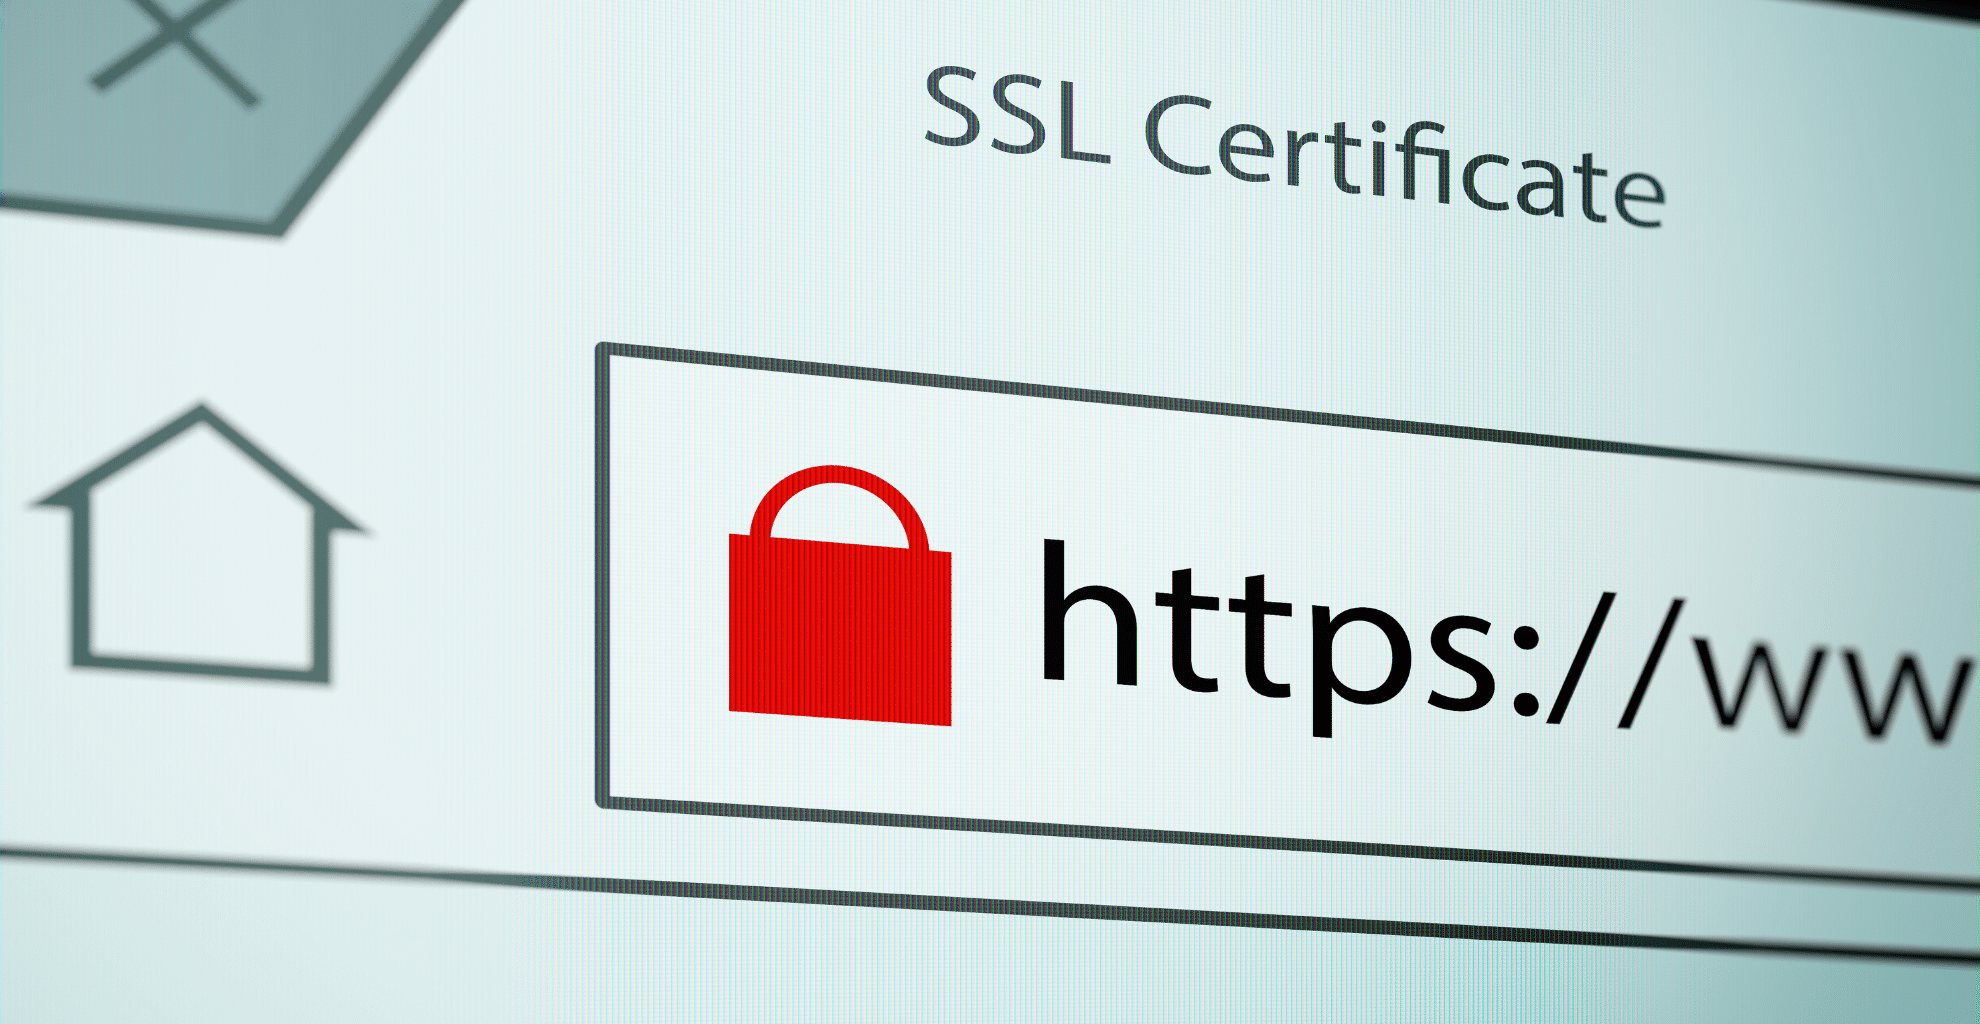 risolvere il problema del certificato ssl su wordpress una guida dettagliata